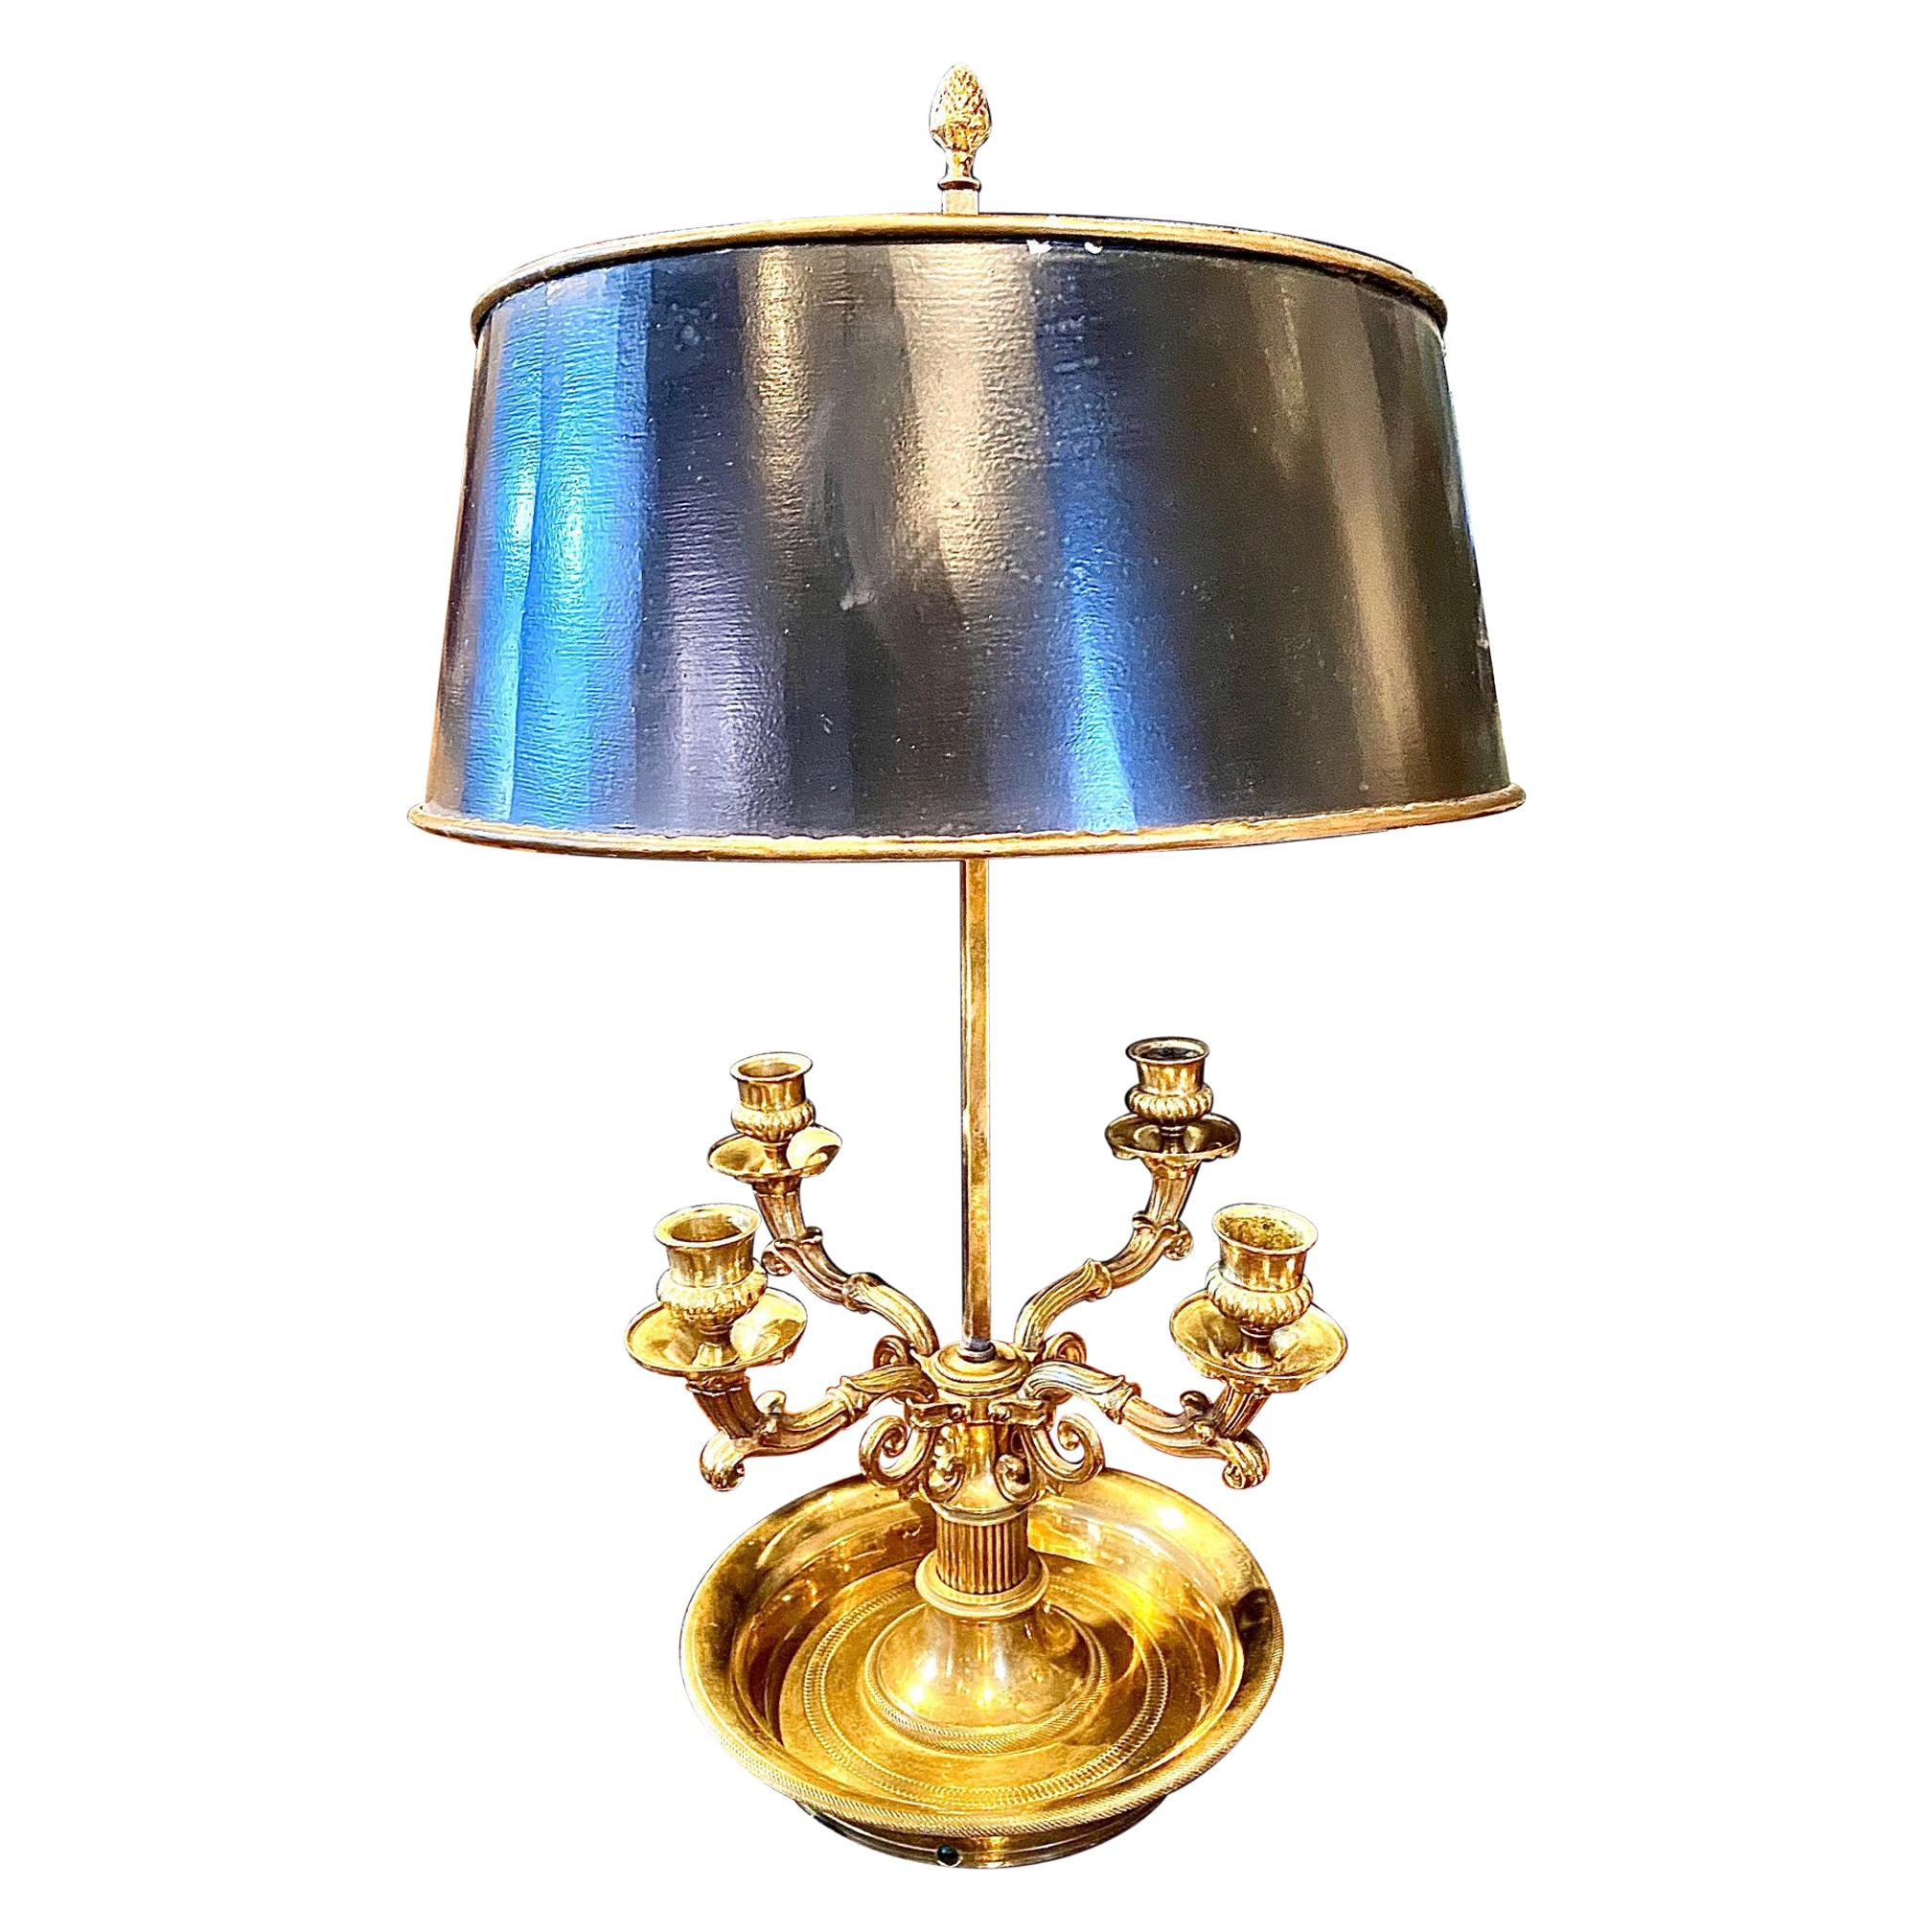 Lampe bouillotte de style Empire français en bronze doré